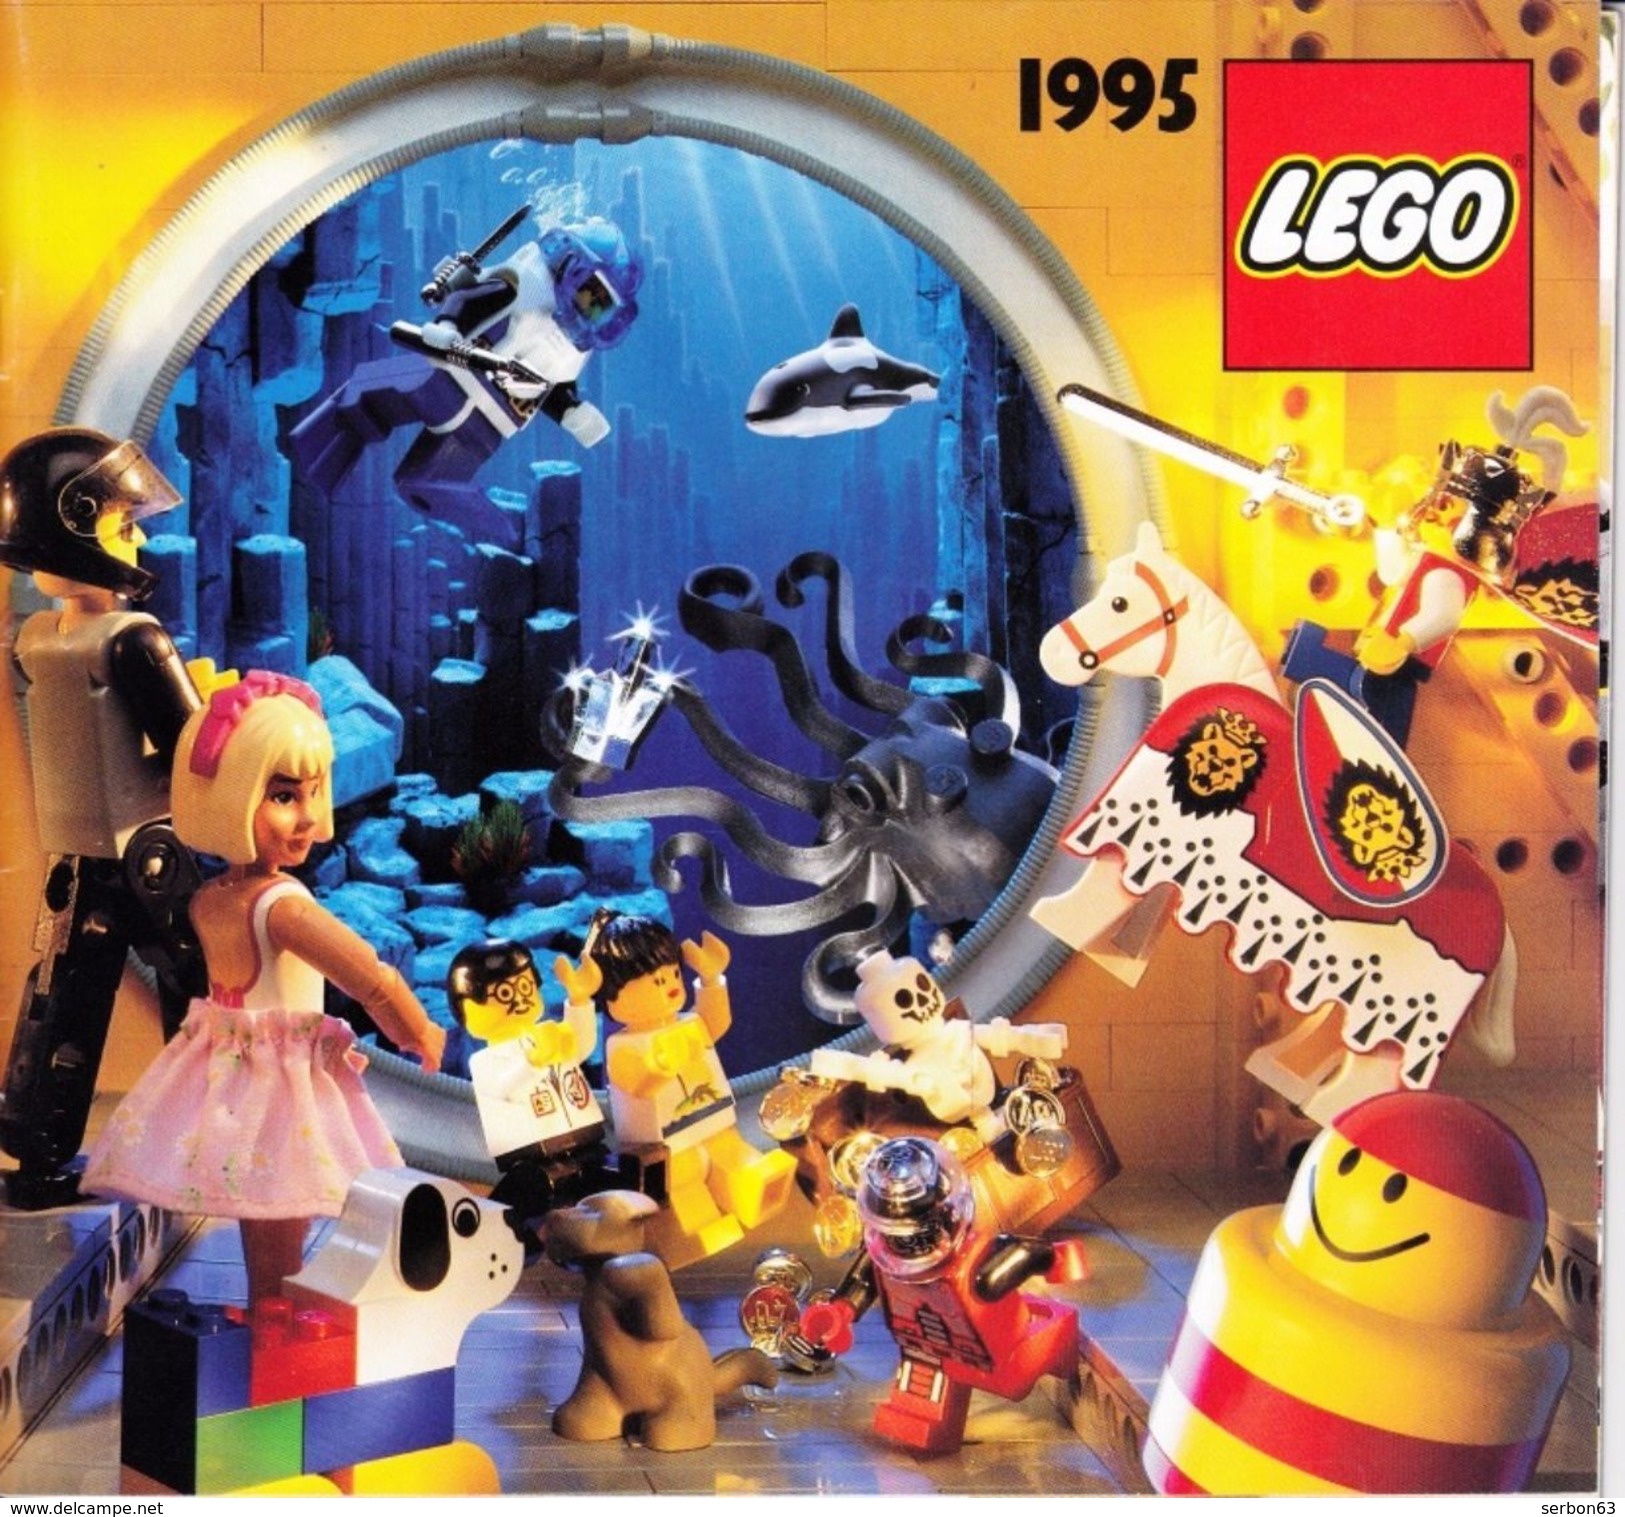 UN CATALOGUE LEGO DE 1995 56 PAGES COULEUR LEGER PLI SUR LA DE (SUR MON SITE Serbon63 DES MILLIERS D'ARTICLES EN VENTES) - Kataloge